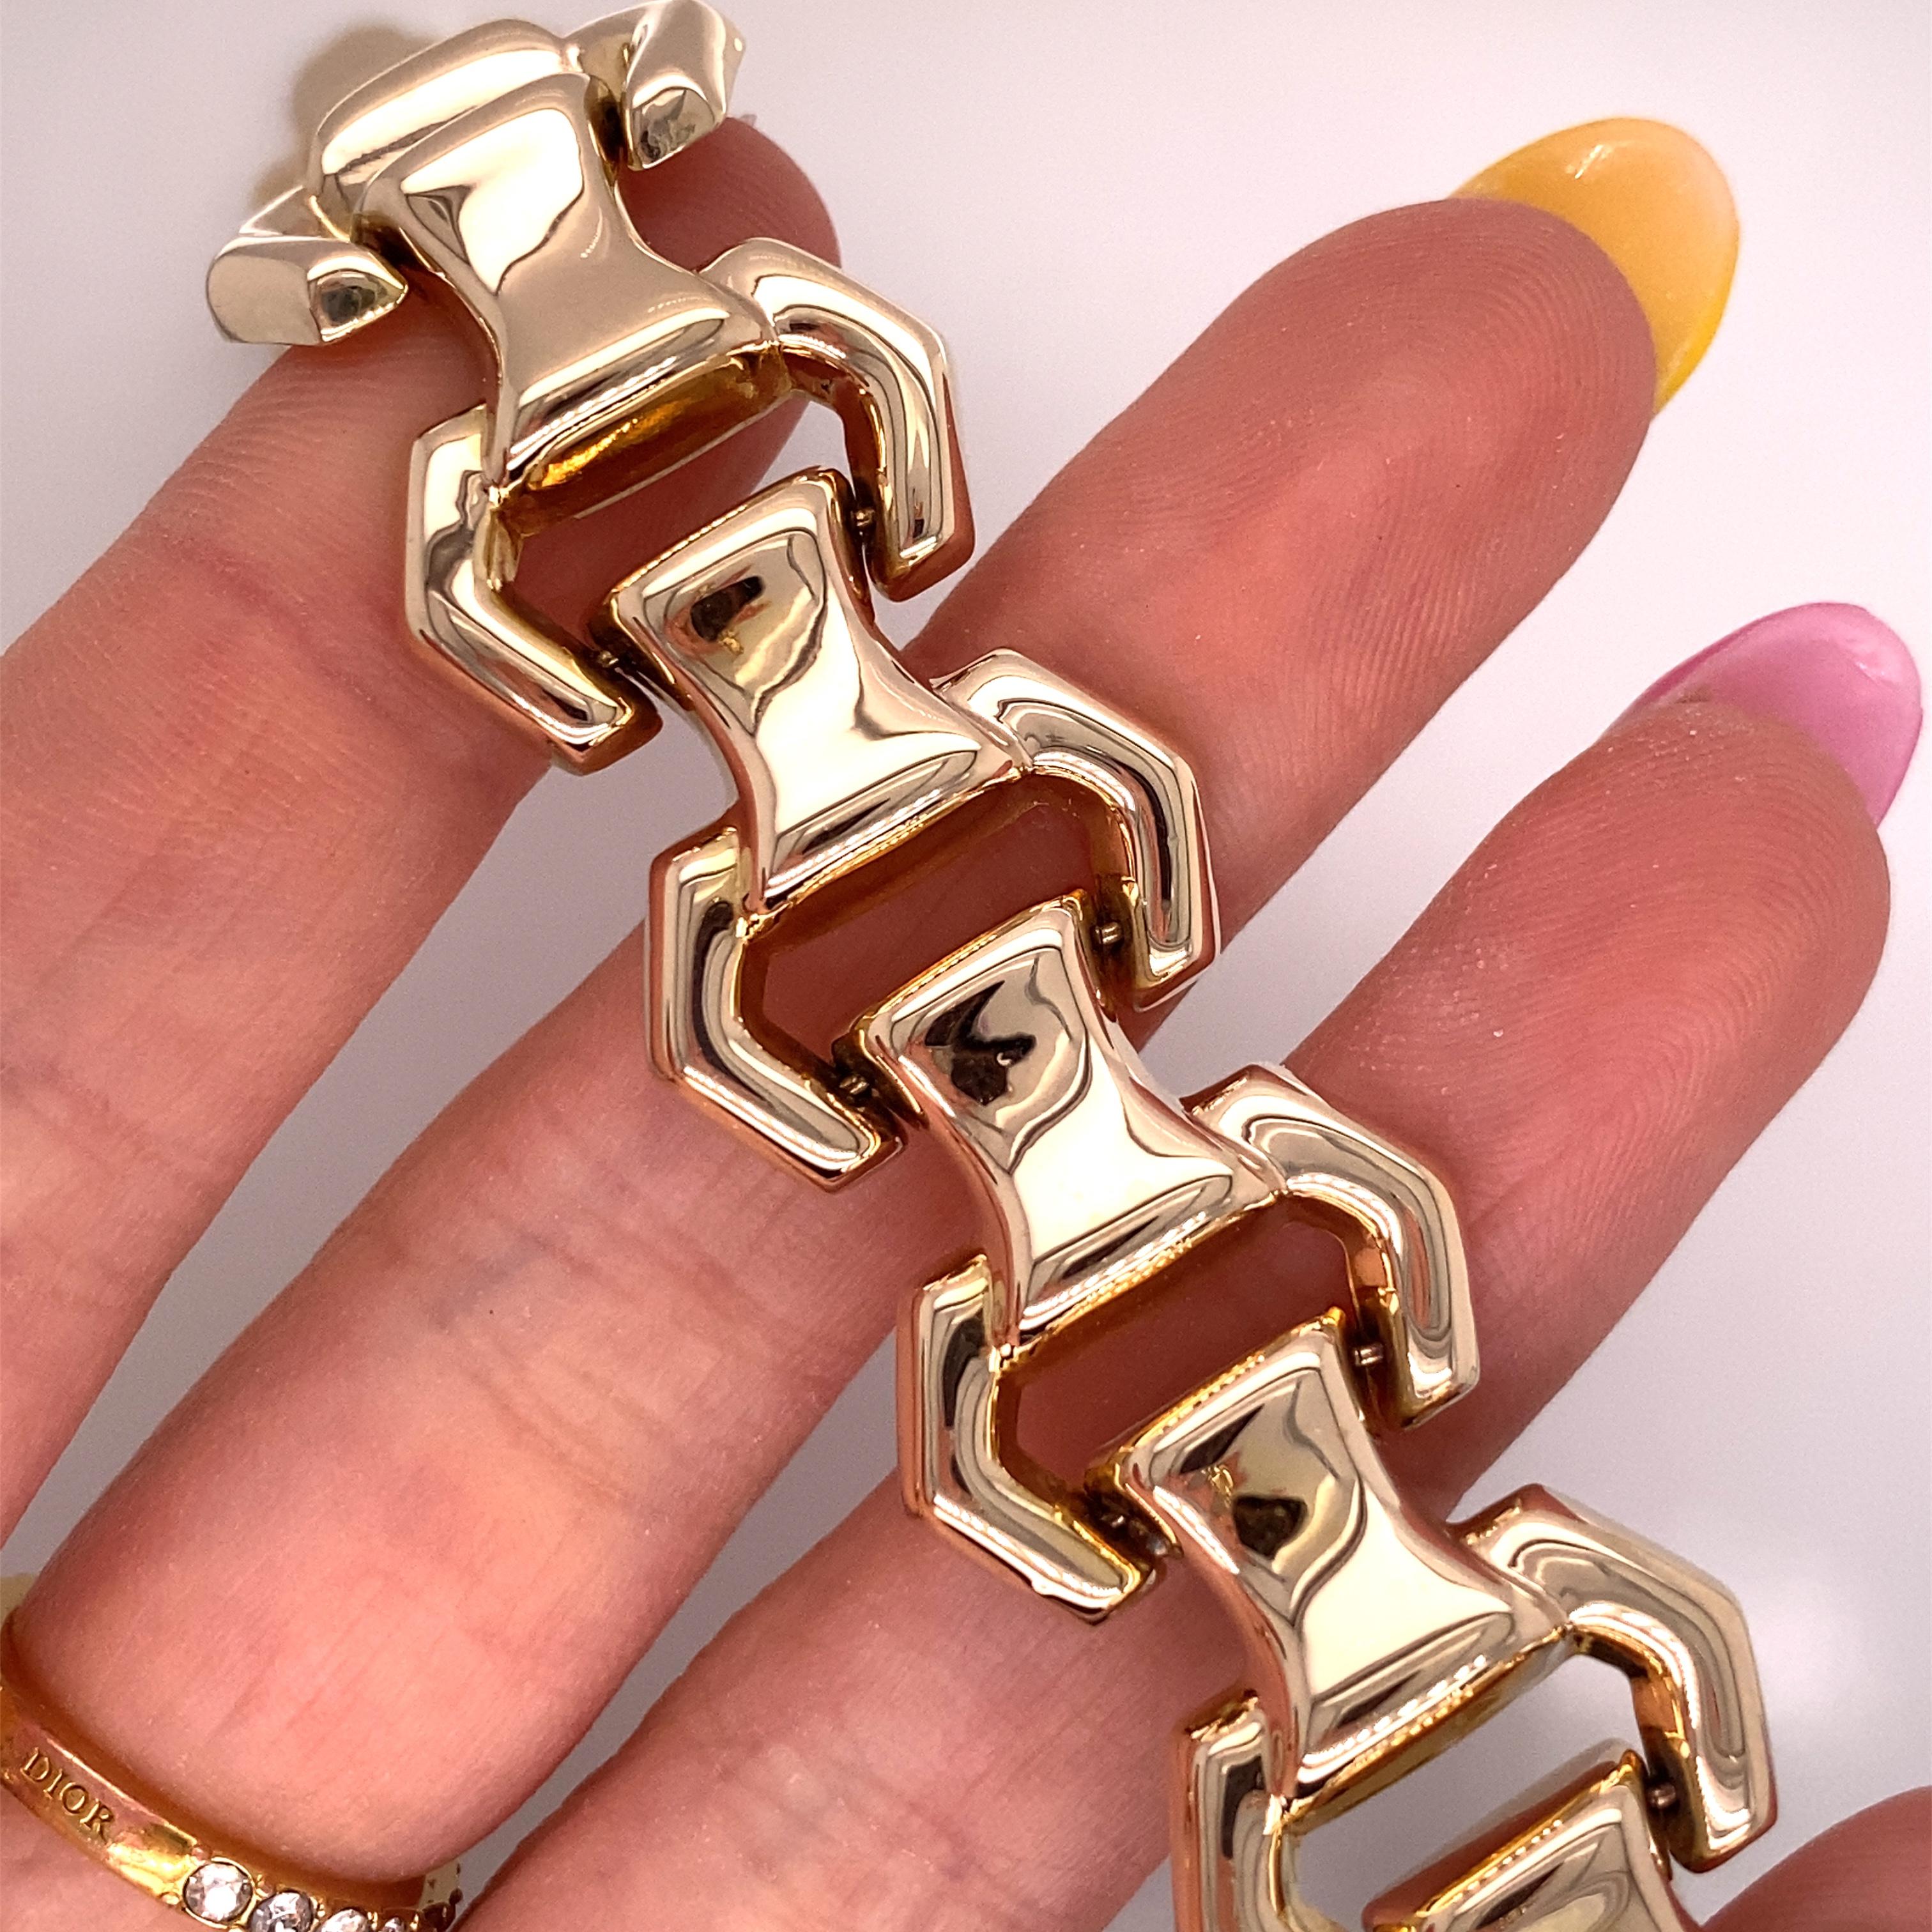 Vintage 1980's 14K Gelbgold Italienisch Bold Link Bracelet - Die italienische gemacht Armband Maßnahmen 7,25 cm lang und .75 cm breit. Das Gewicht des Armbands beträgt 25,79 Gramm.